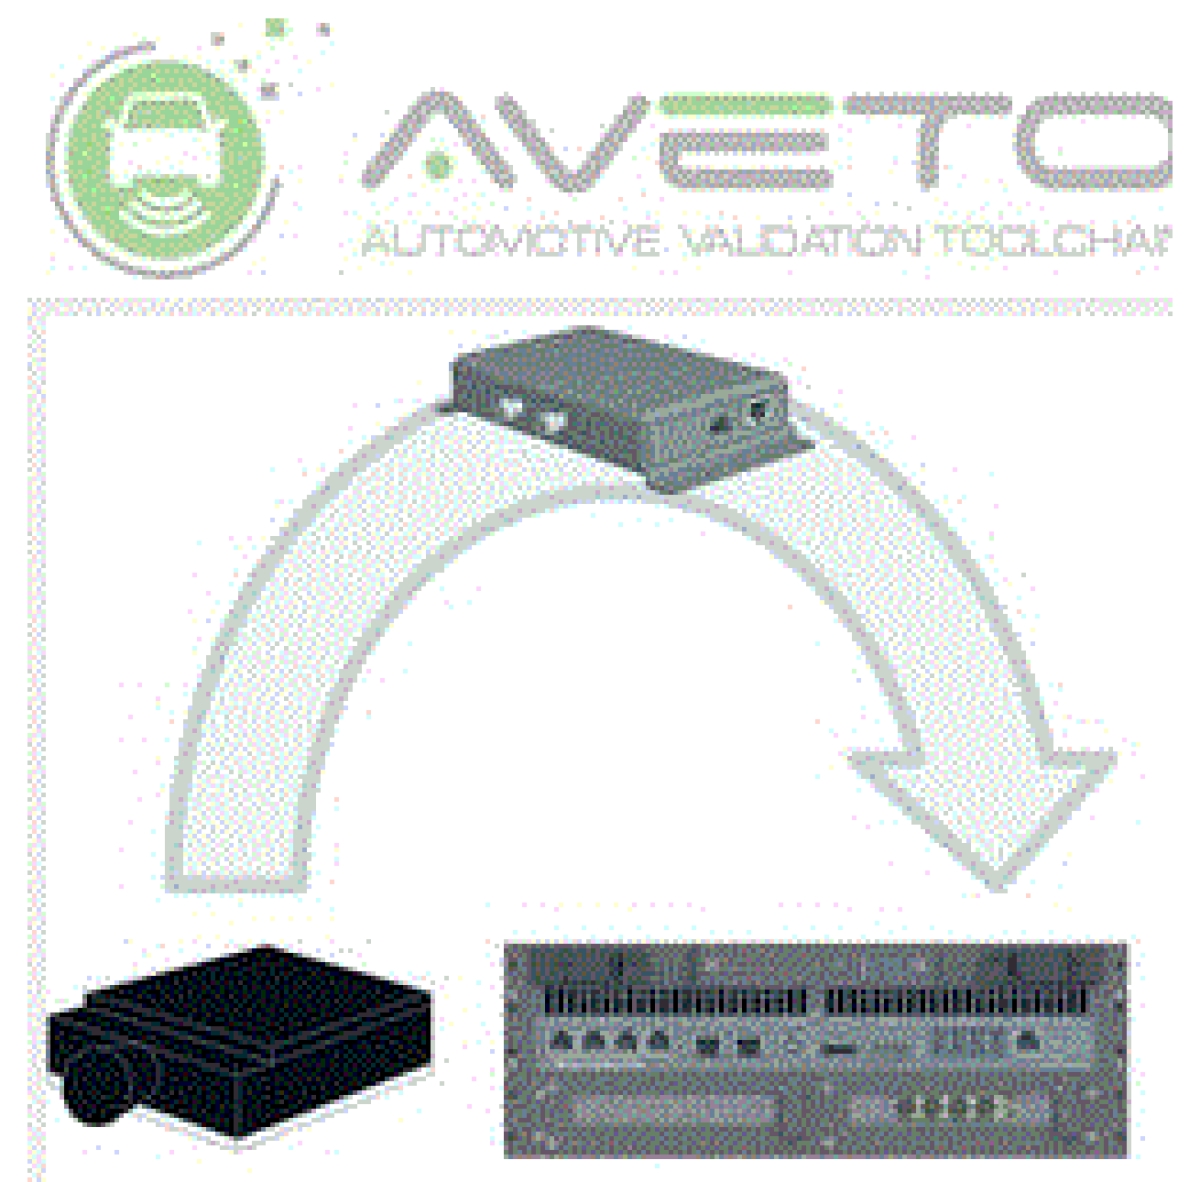 AVETO.rec - 自律走行のためのセンサー検証ツール